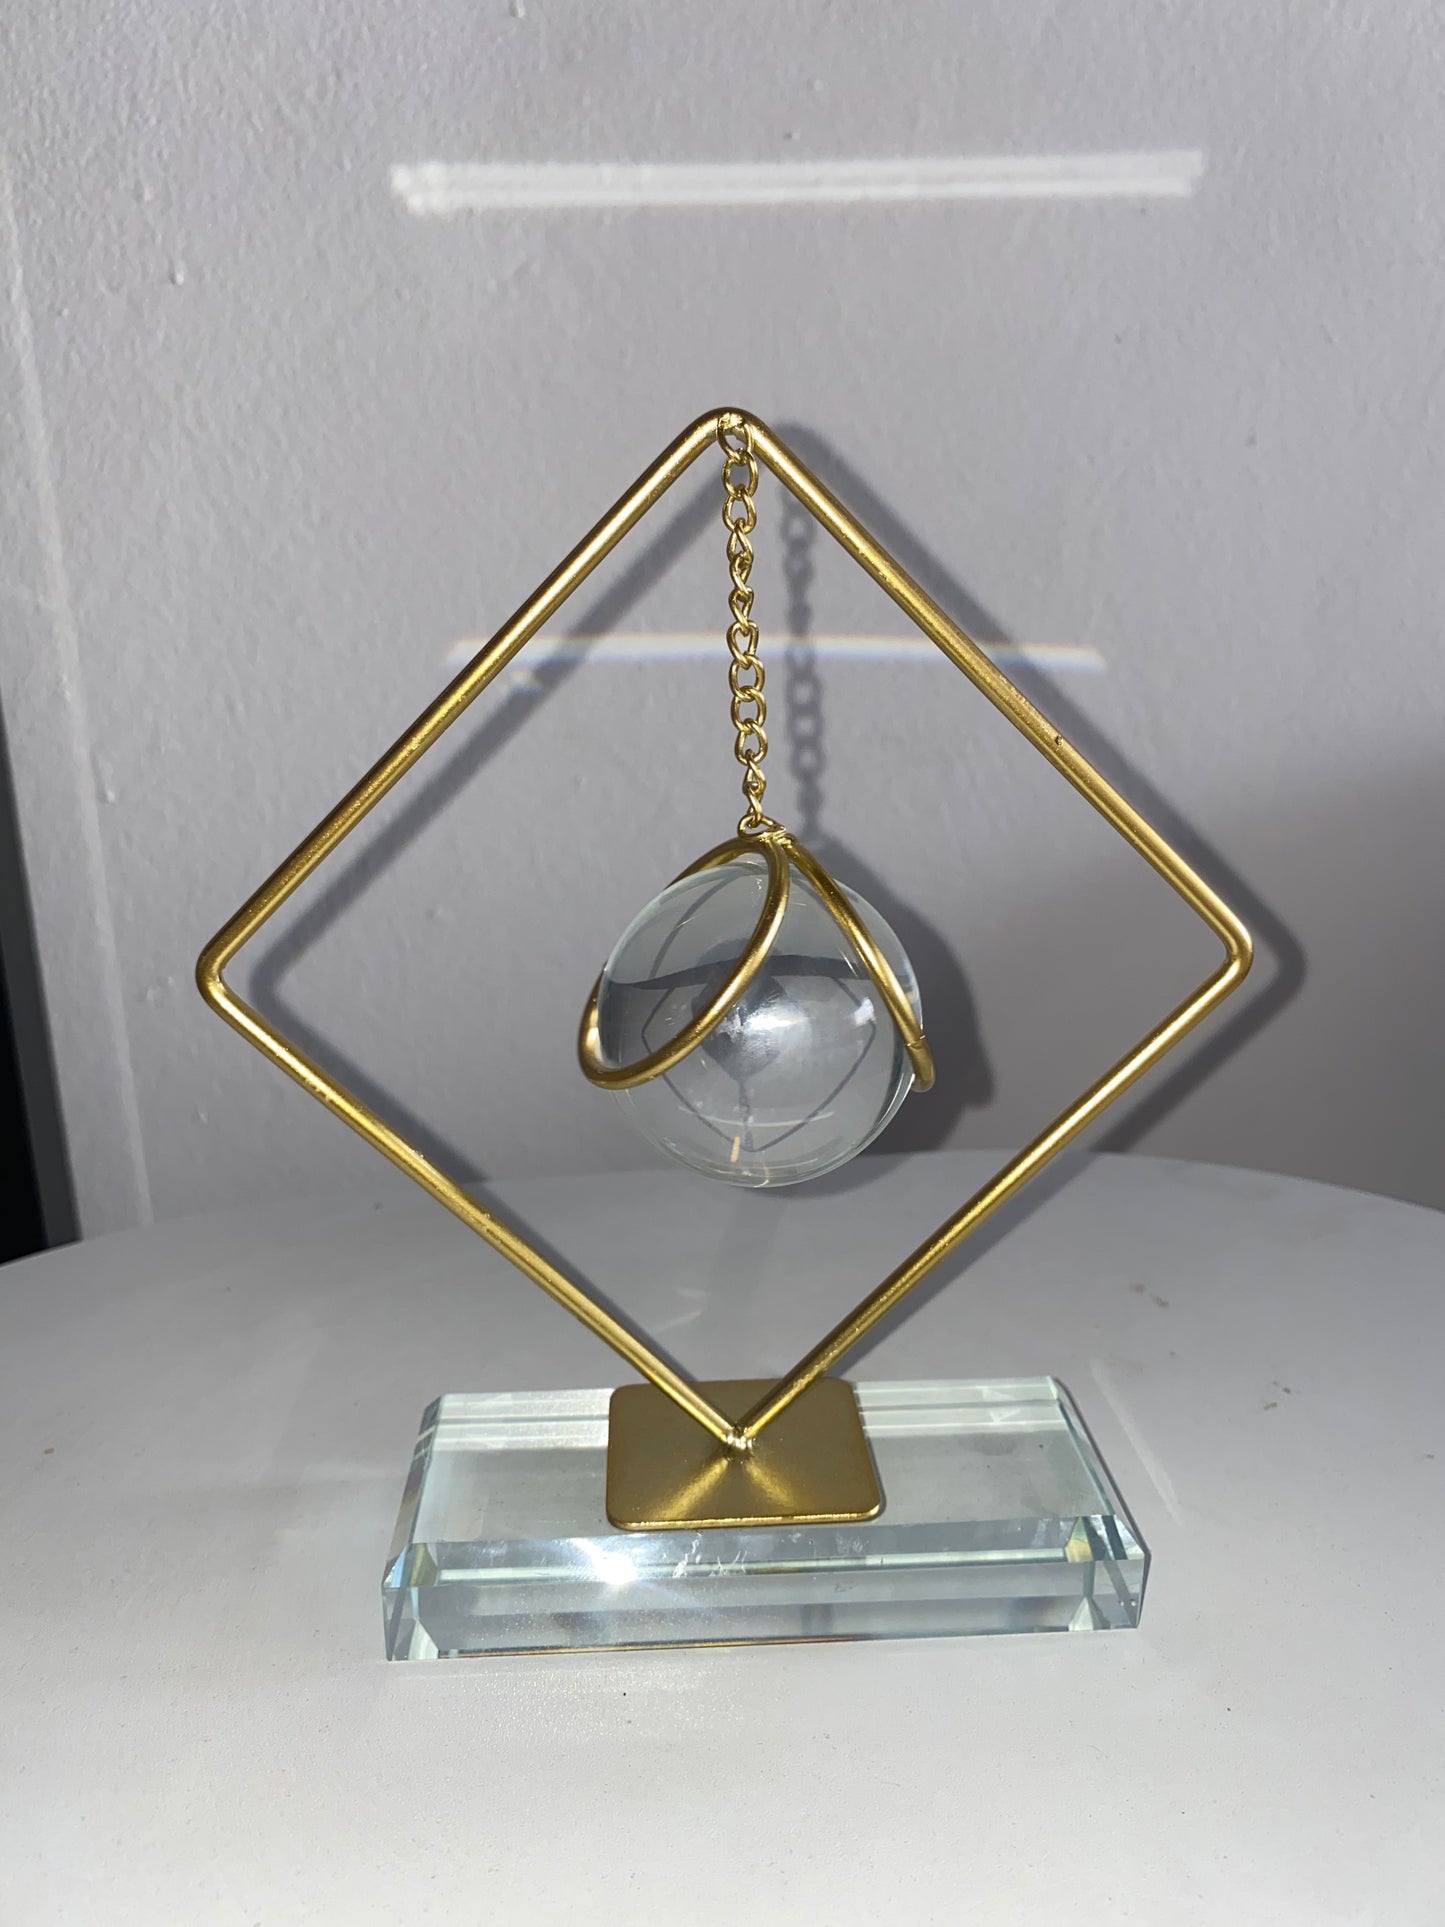 كرة كريستال معدنية ذهبية مزخرفة (قاعدة)، قطعة مركزية